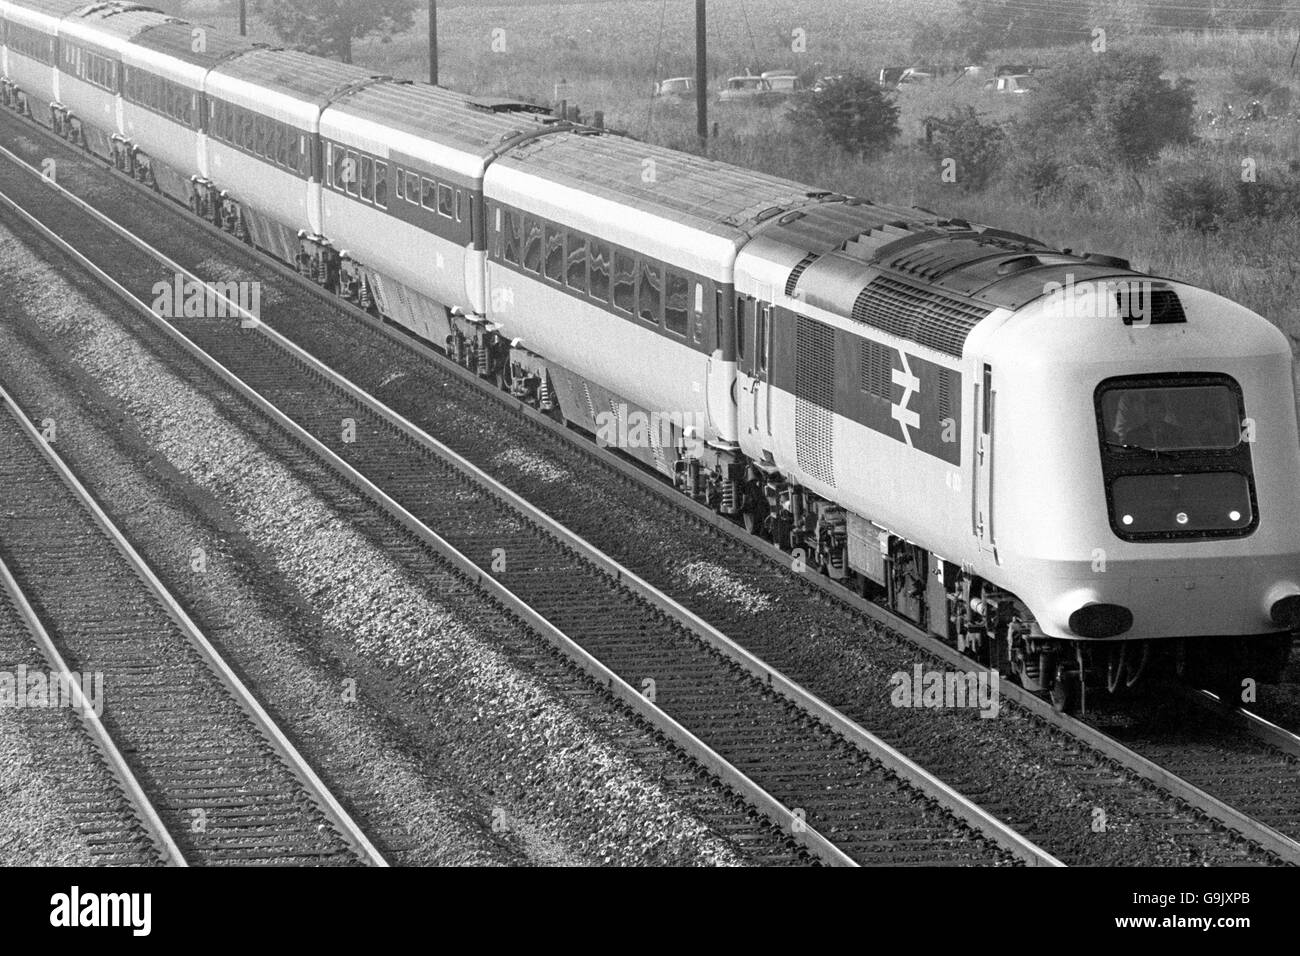 Der neue Hochgeschwindigkeitszug der British Rail fährt auf einer Probefahrt von London nach Darlington durch Biggleswade. Der Zug mit einer Geschwindigkeit von 125 km/h, der derzeit den Weltrekord für Dieselzüge mit einer Geschwindigkeit von 143 km/h hält, wird voraussichtlich auf den meisten Überstadtstrecken eingesetzt. Stockfoto